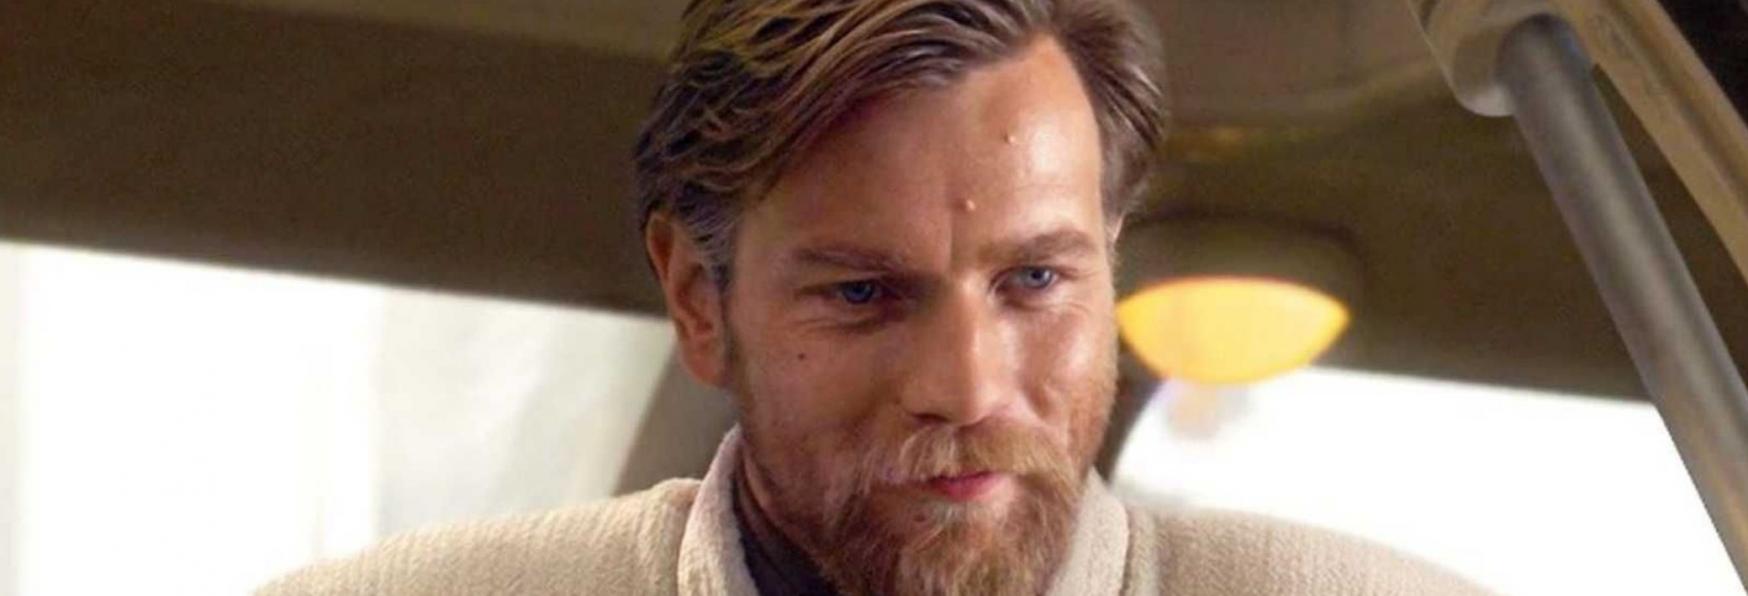 Obi-Wan Kenobi: un attore commenta il Trailer non ancora Rilasciato